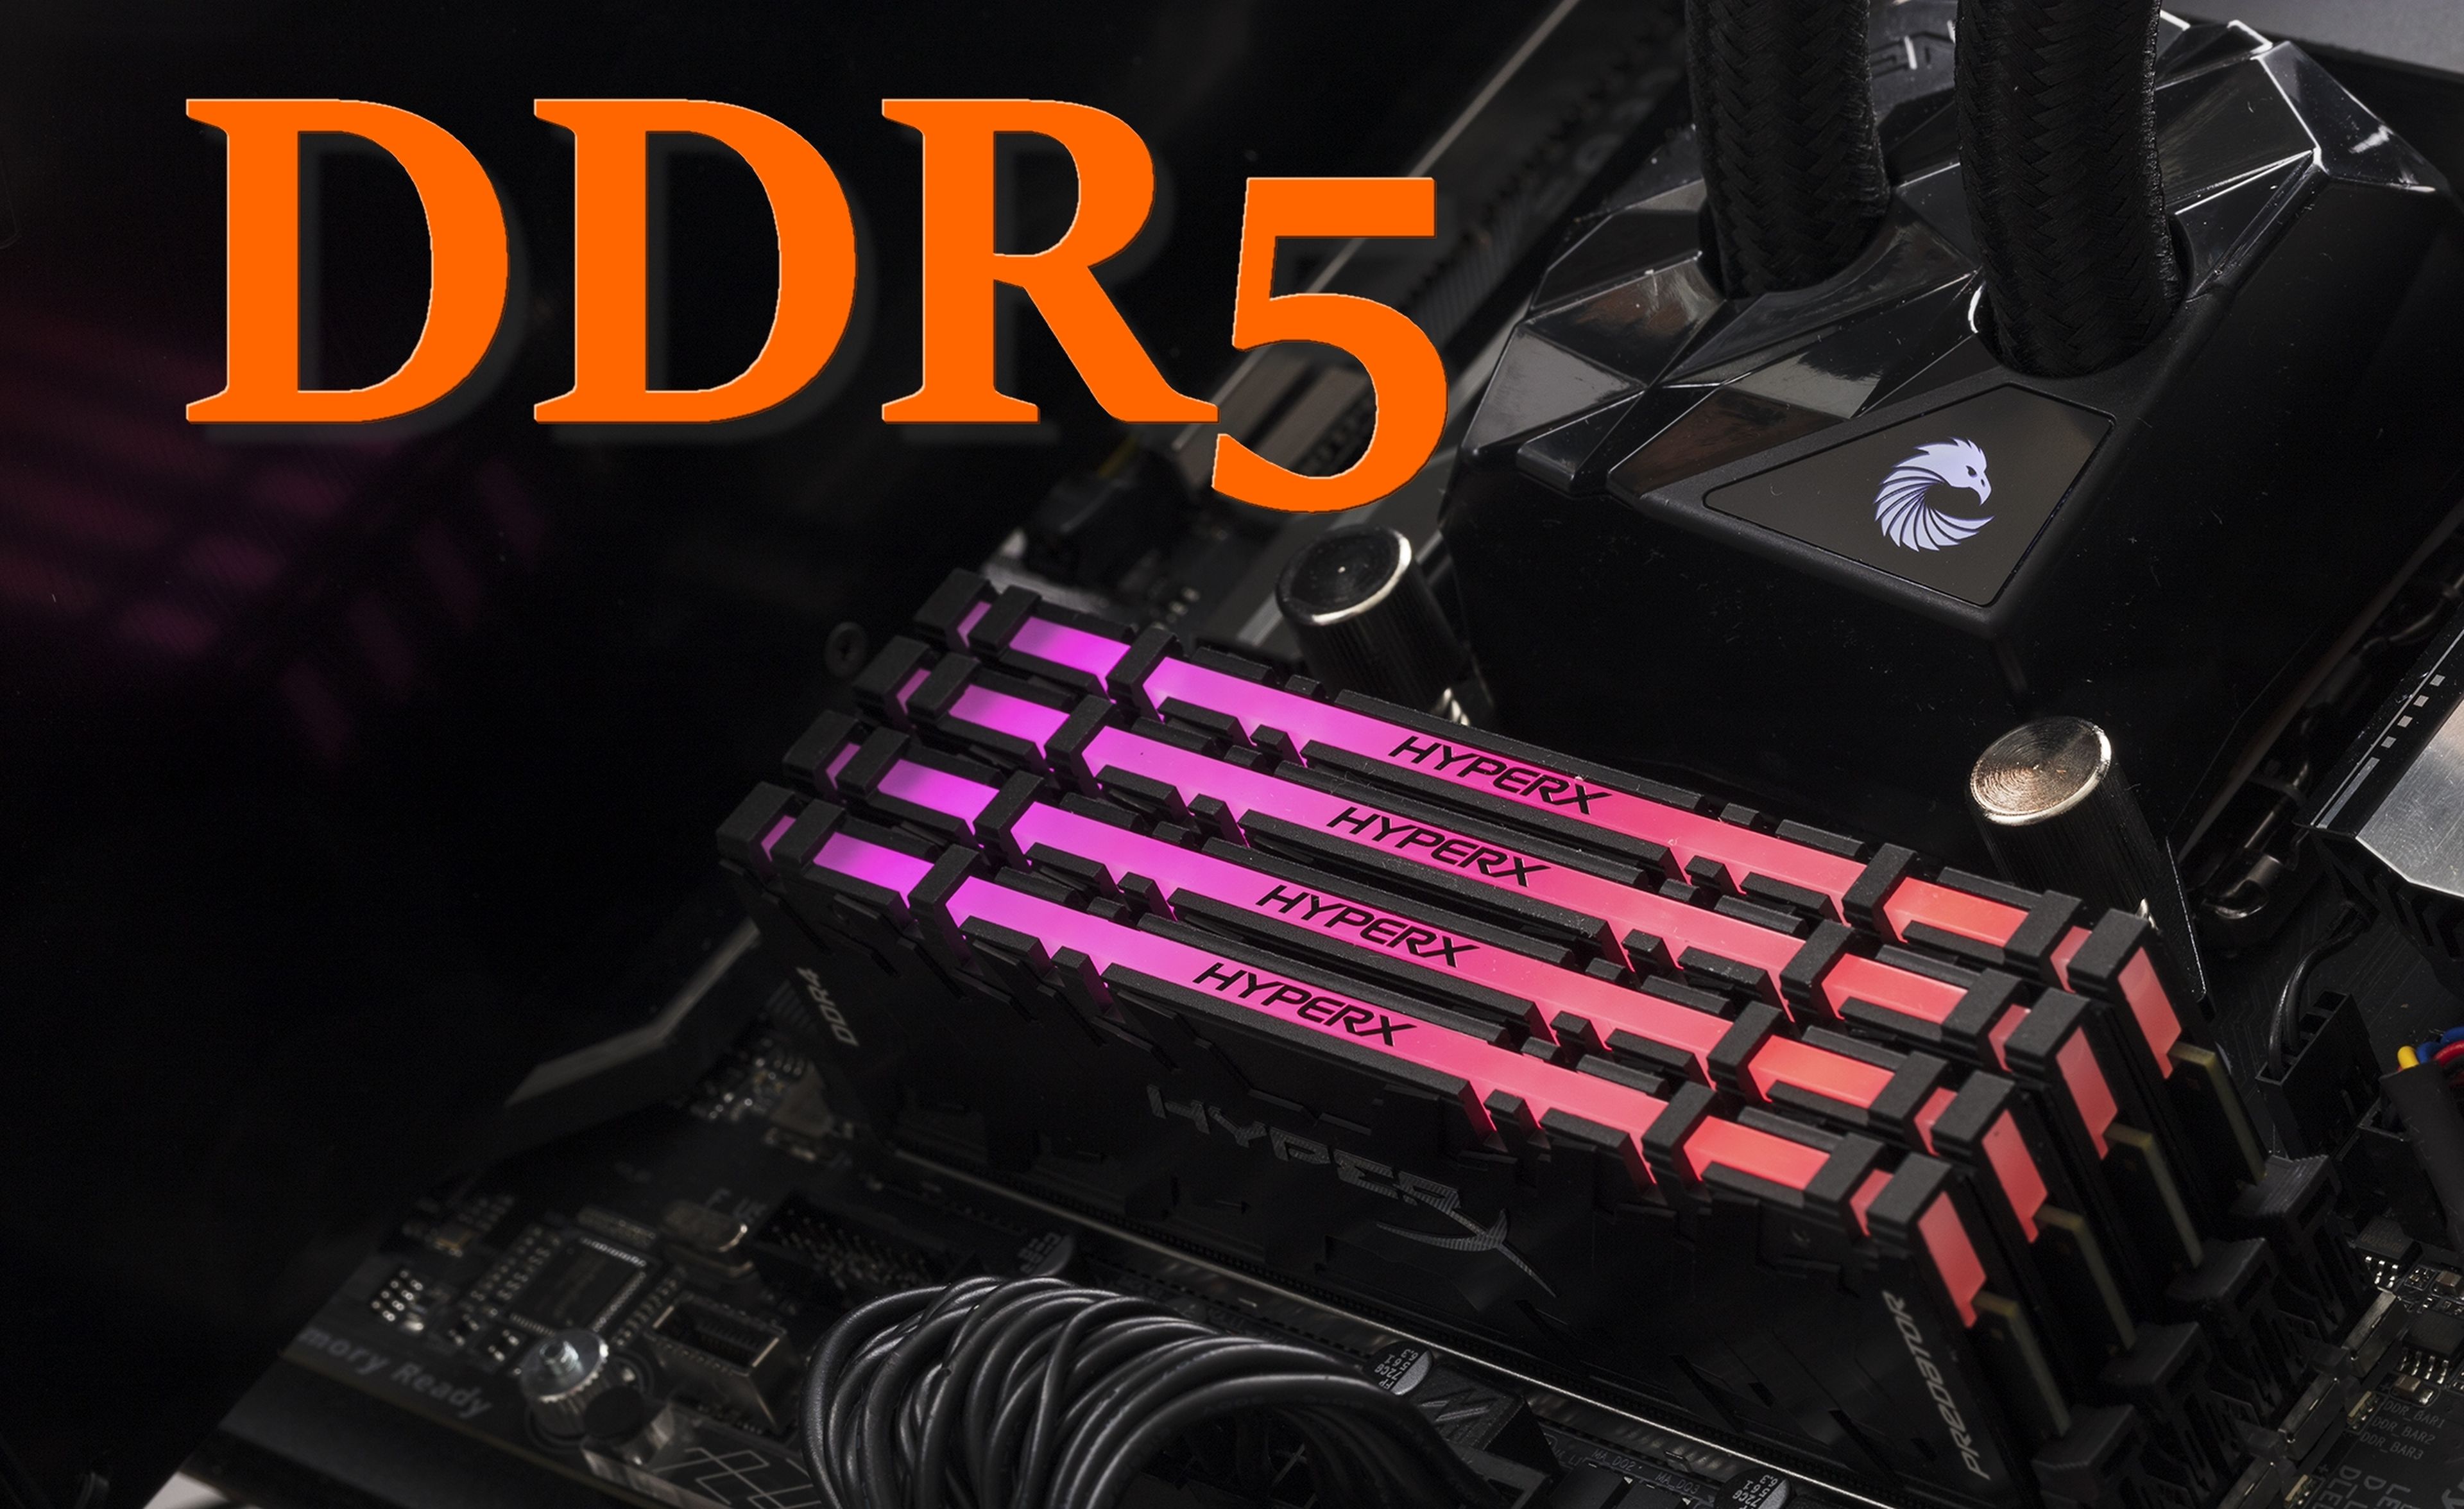 DDR5: Diferencias con DDR4 y todo lo que debes saber de la nueva generación de memoria RAM para PC